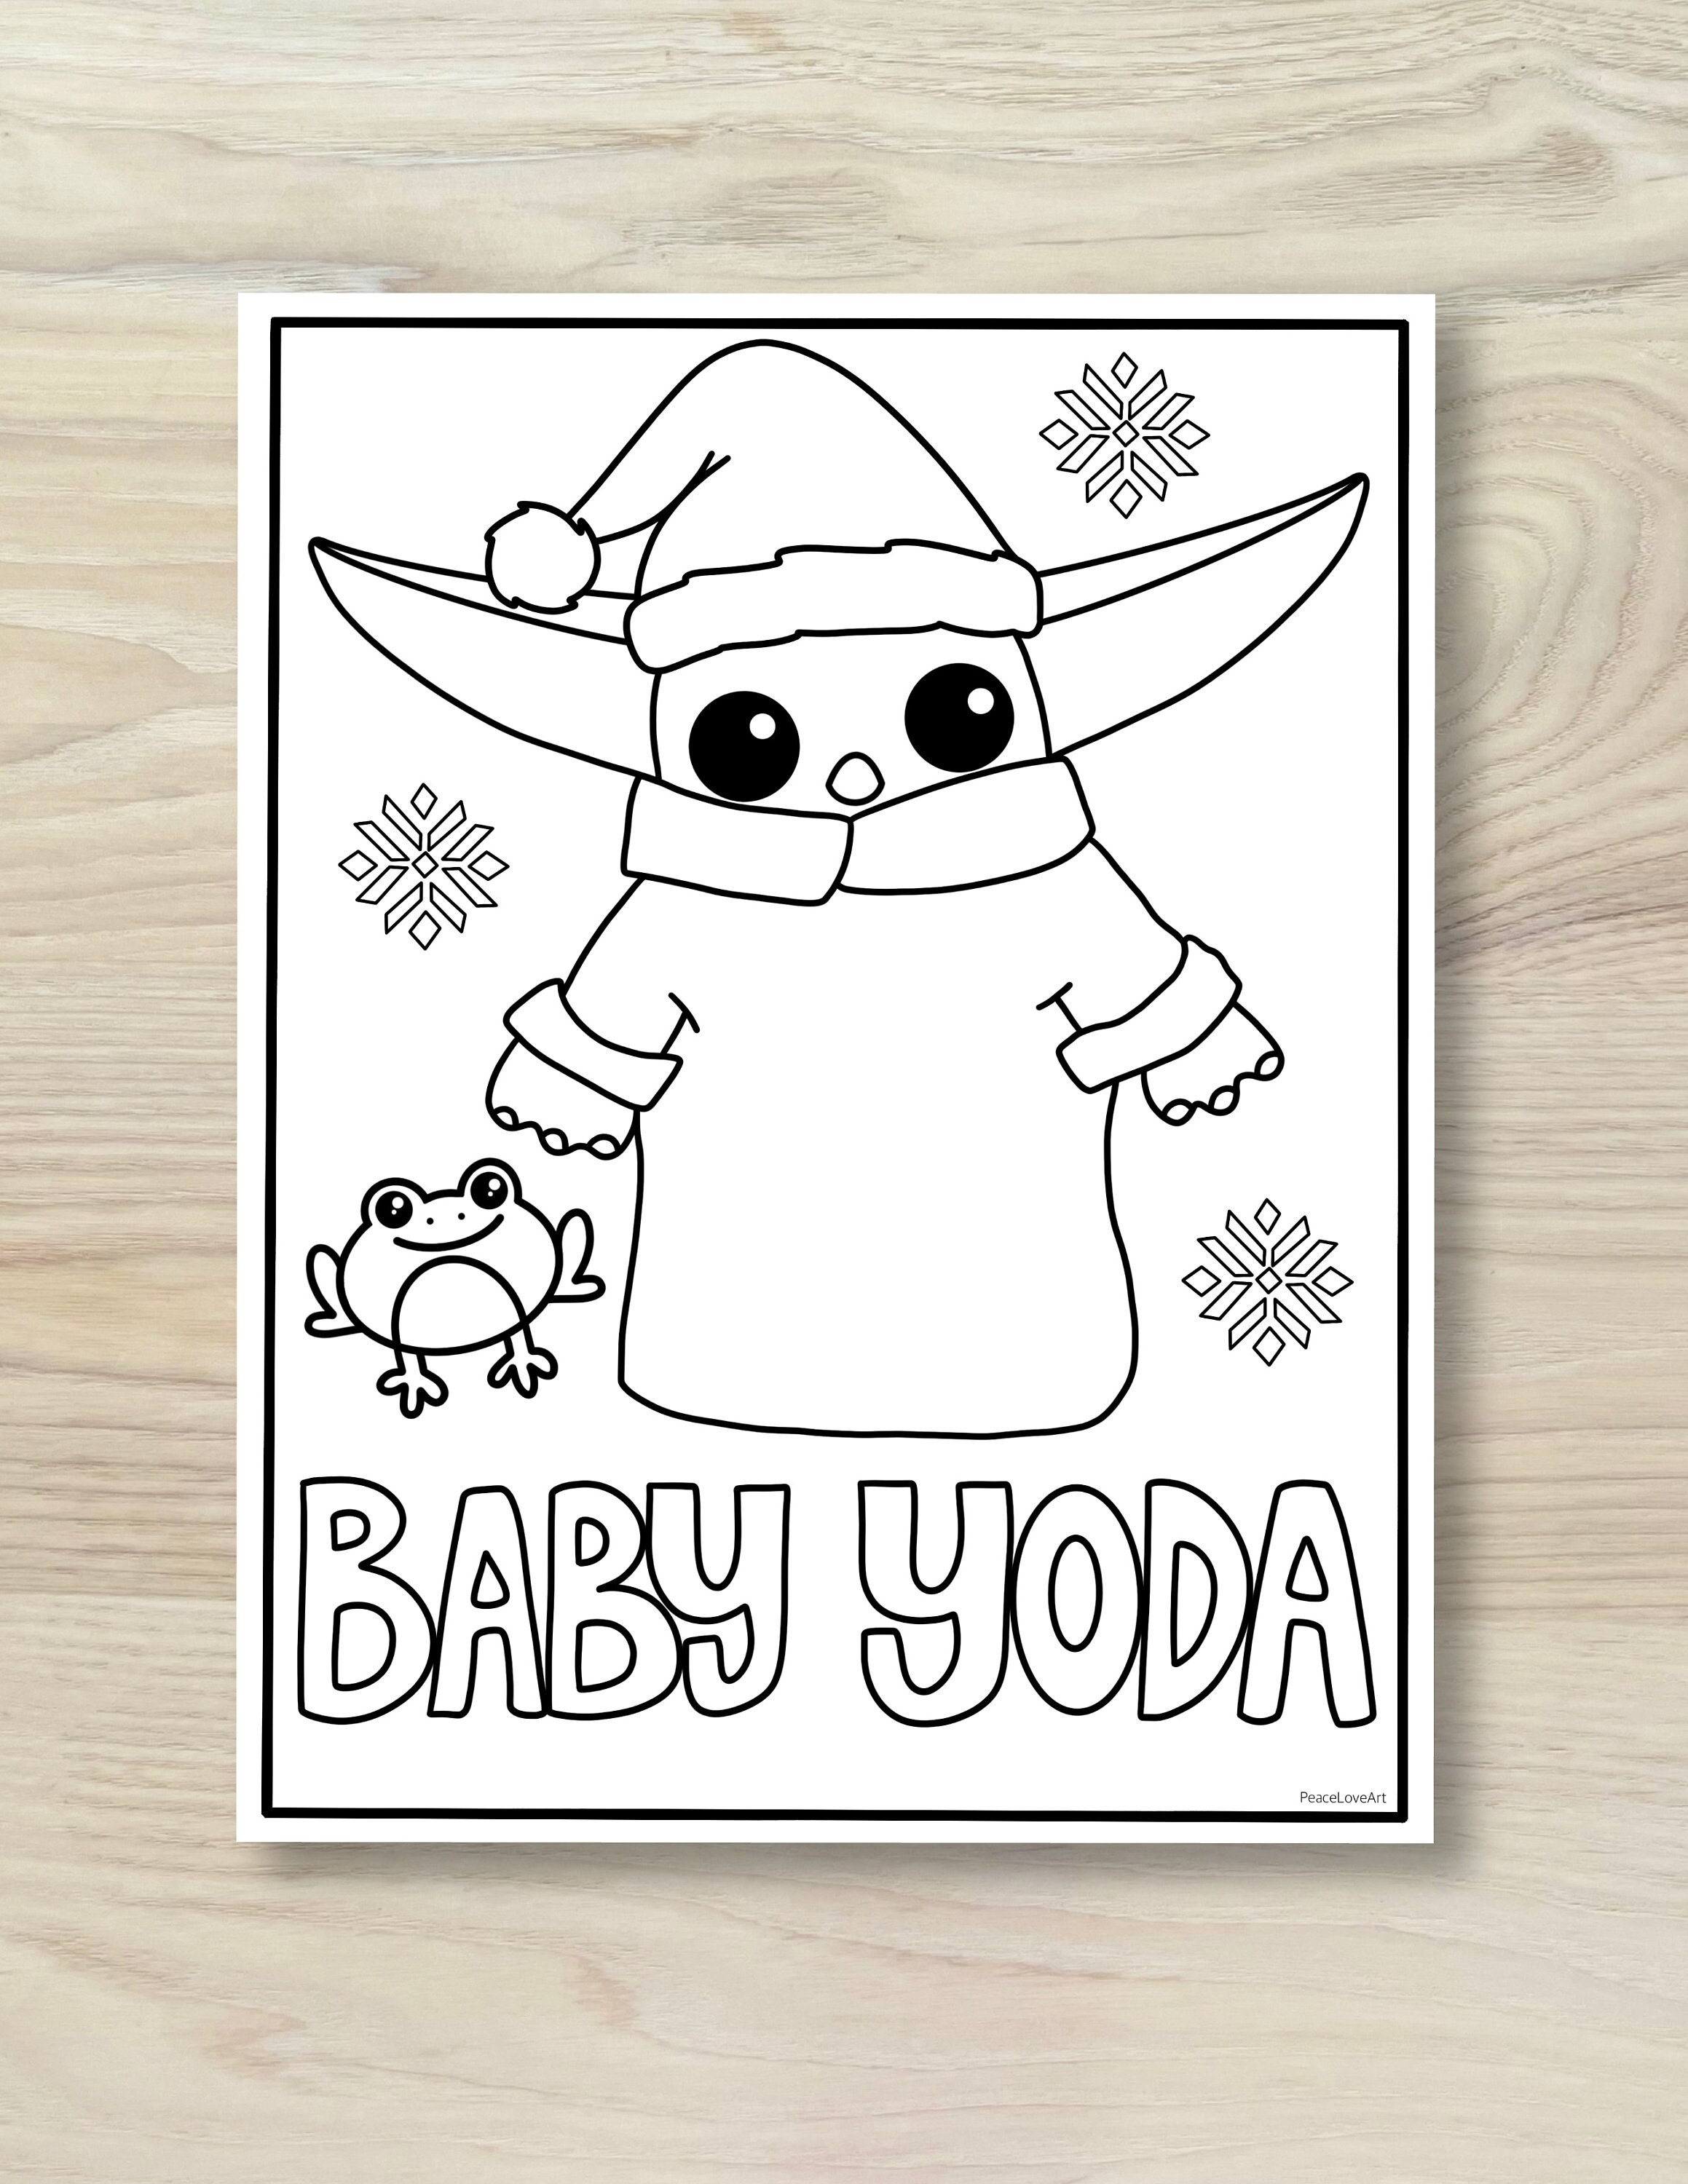 Holiday baby yoda coloring page